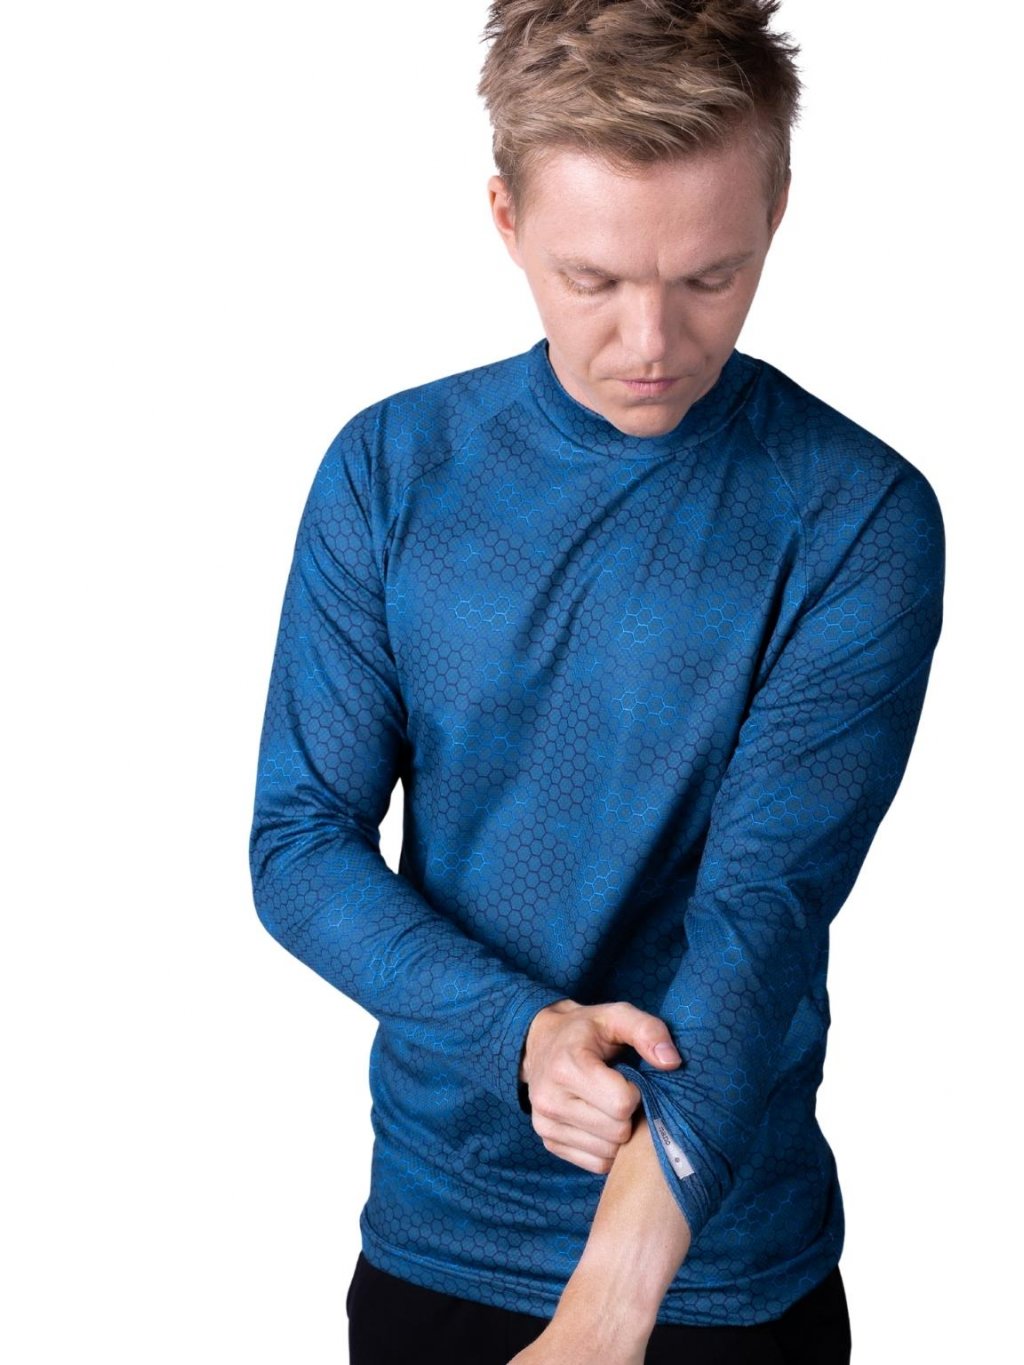 Tmavě modré ultralehké pánské termo triko Plastic nanosilver®  ultralight, vhodné na zimní sporty